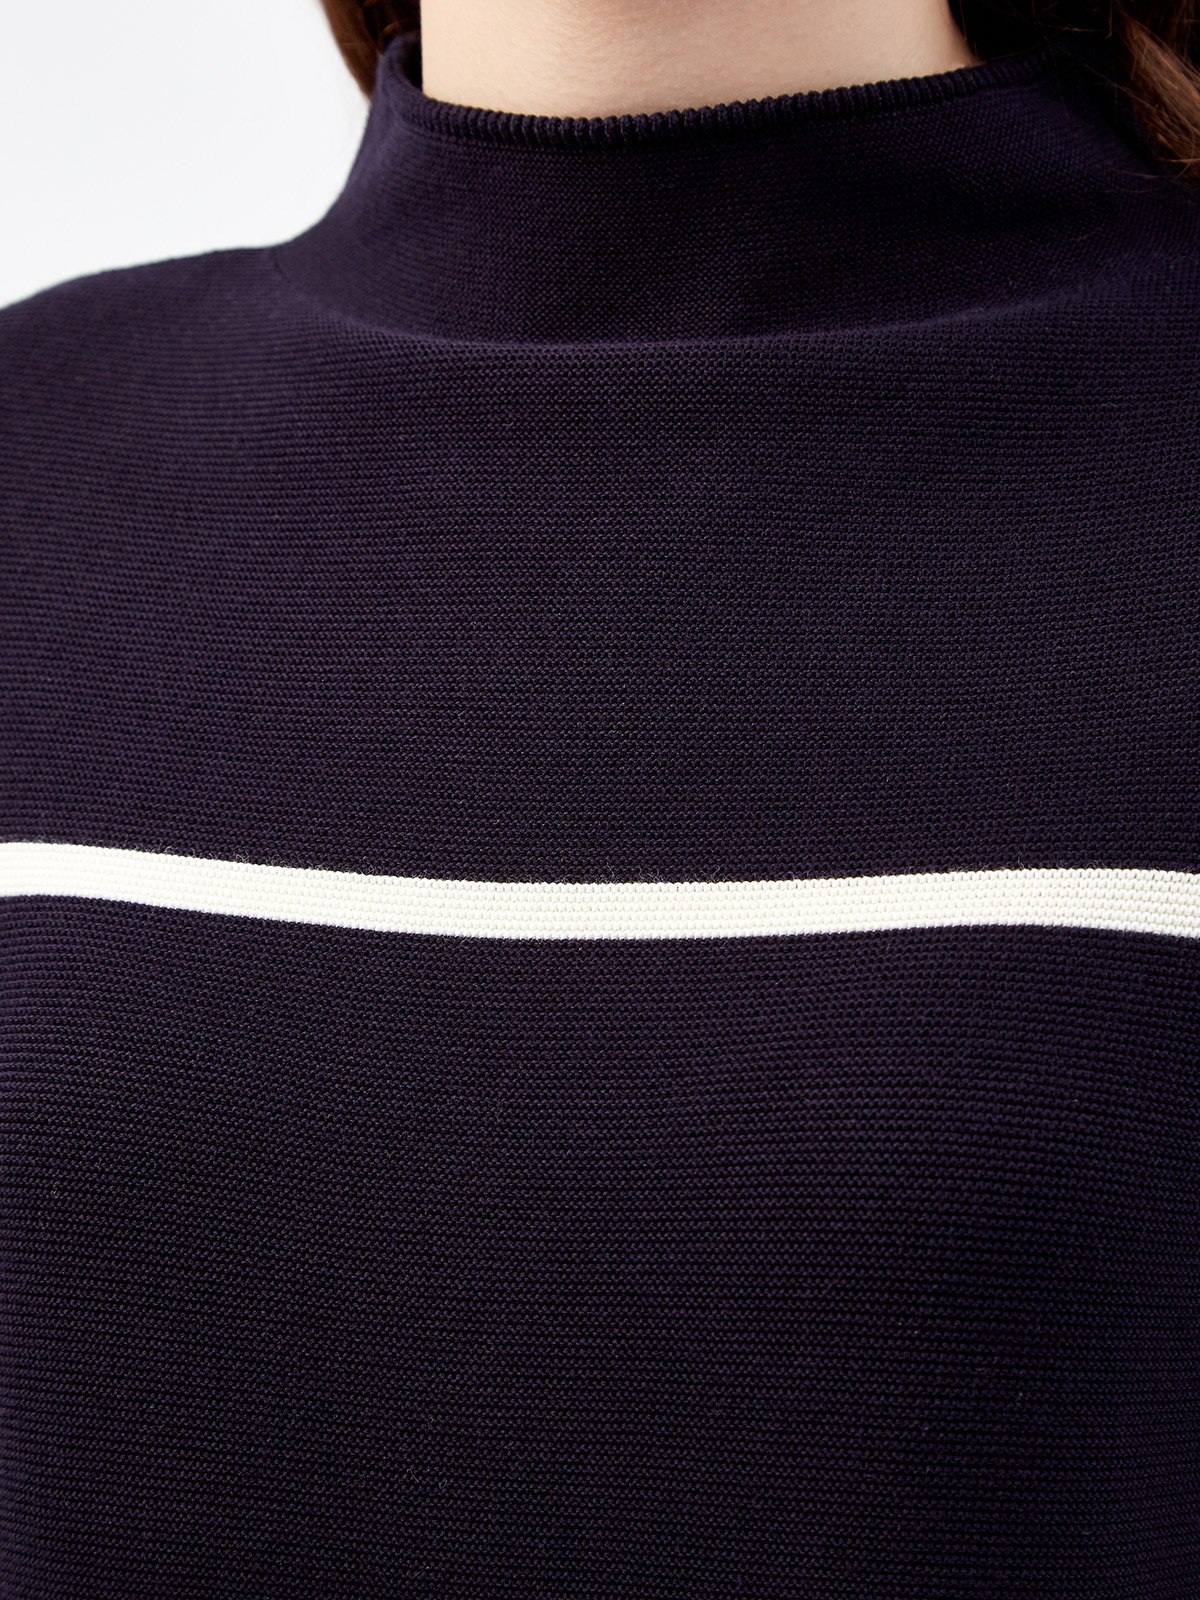 Пуловер из хлопковой пряжи в стиле colorblock LORENA ANTONIAZZI, цвет черно-белый, размер 40 - фото 5